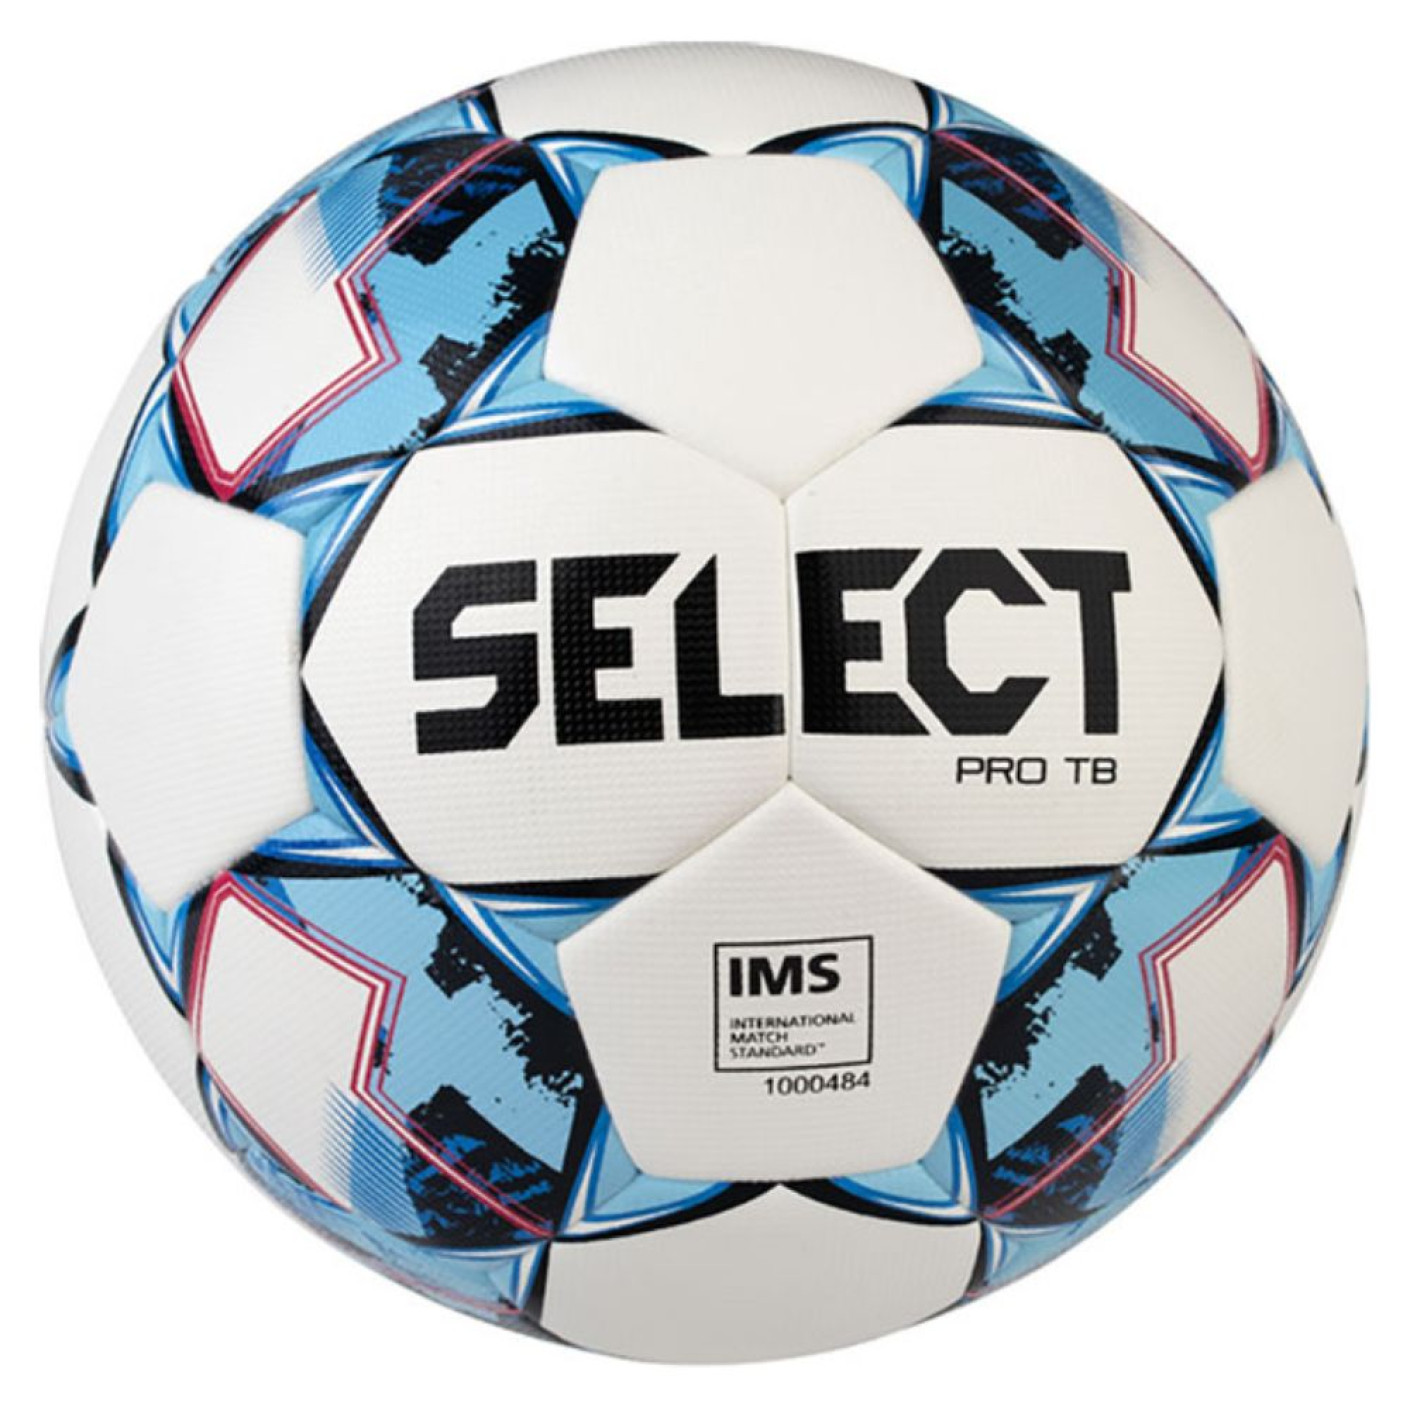 Select Pro TB v22 Ballon de Football Taille 5 Blanc Bleu clair Rouge 